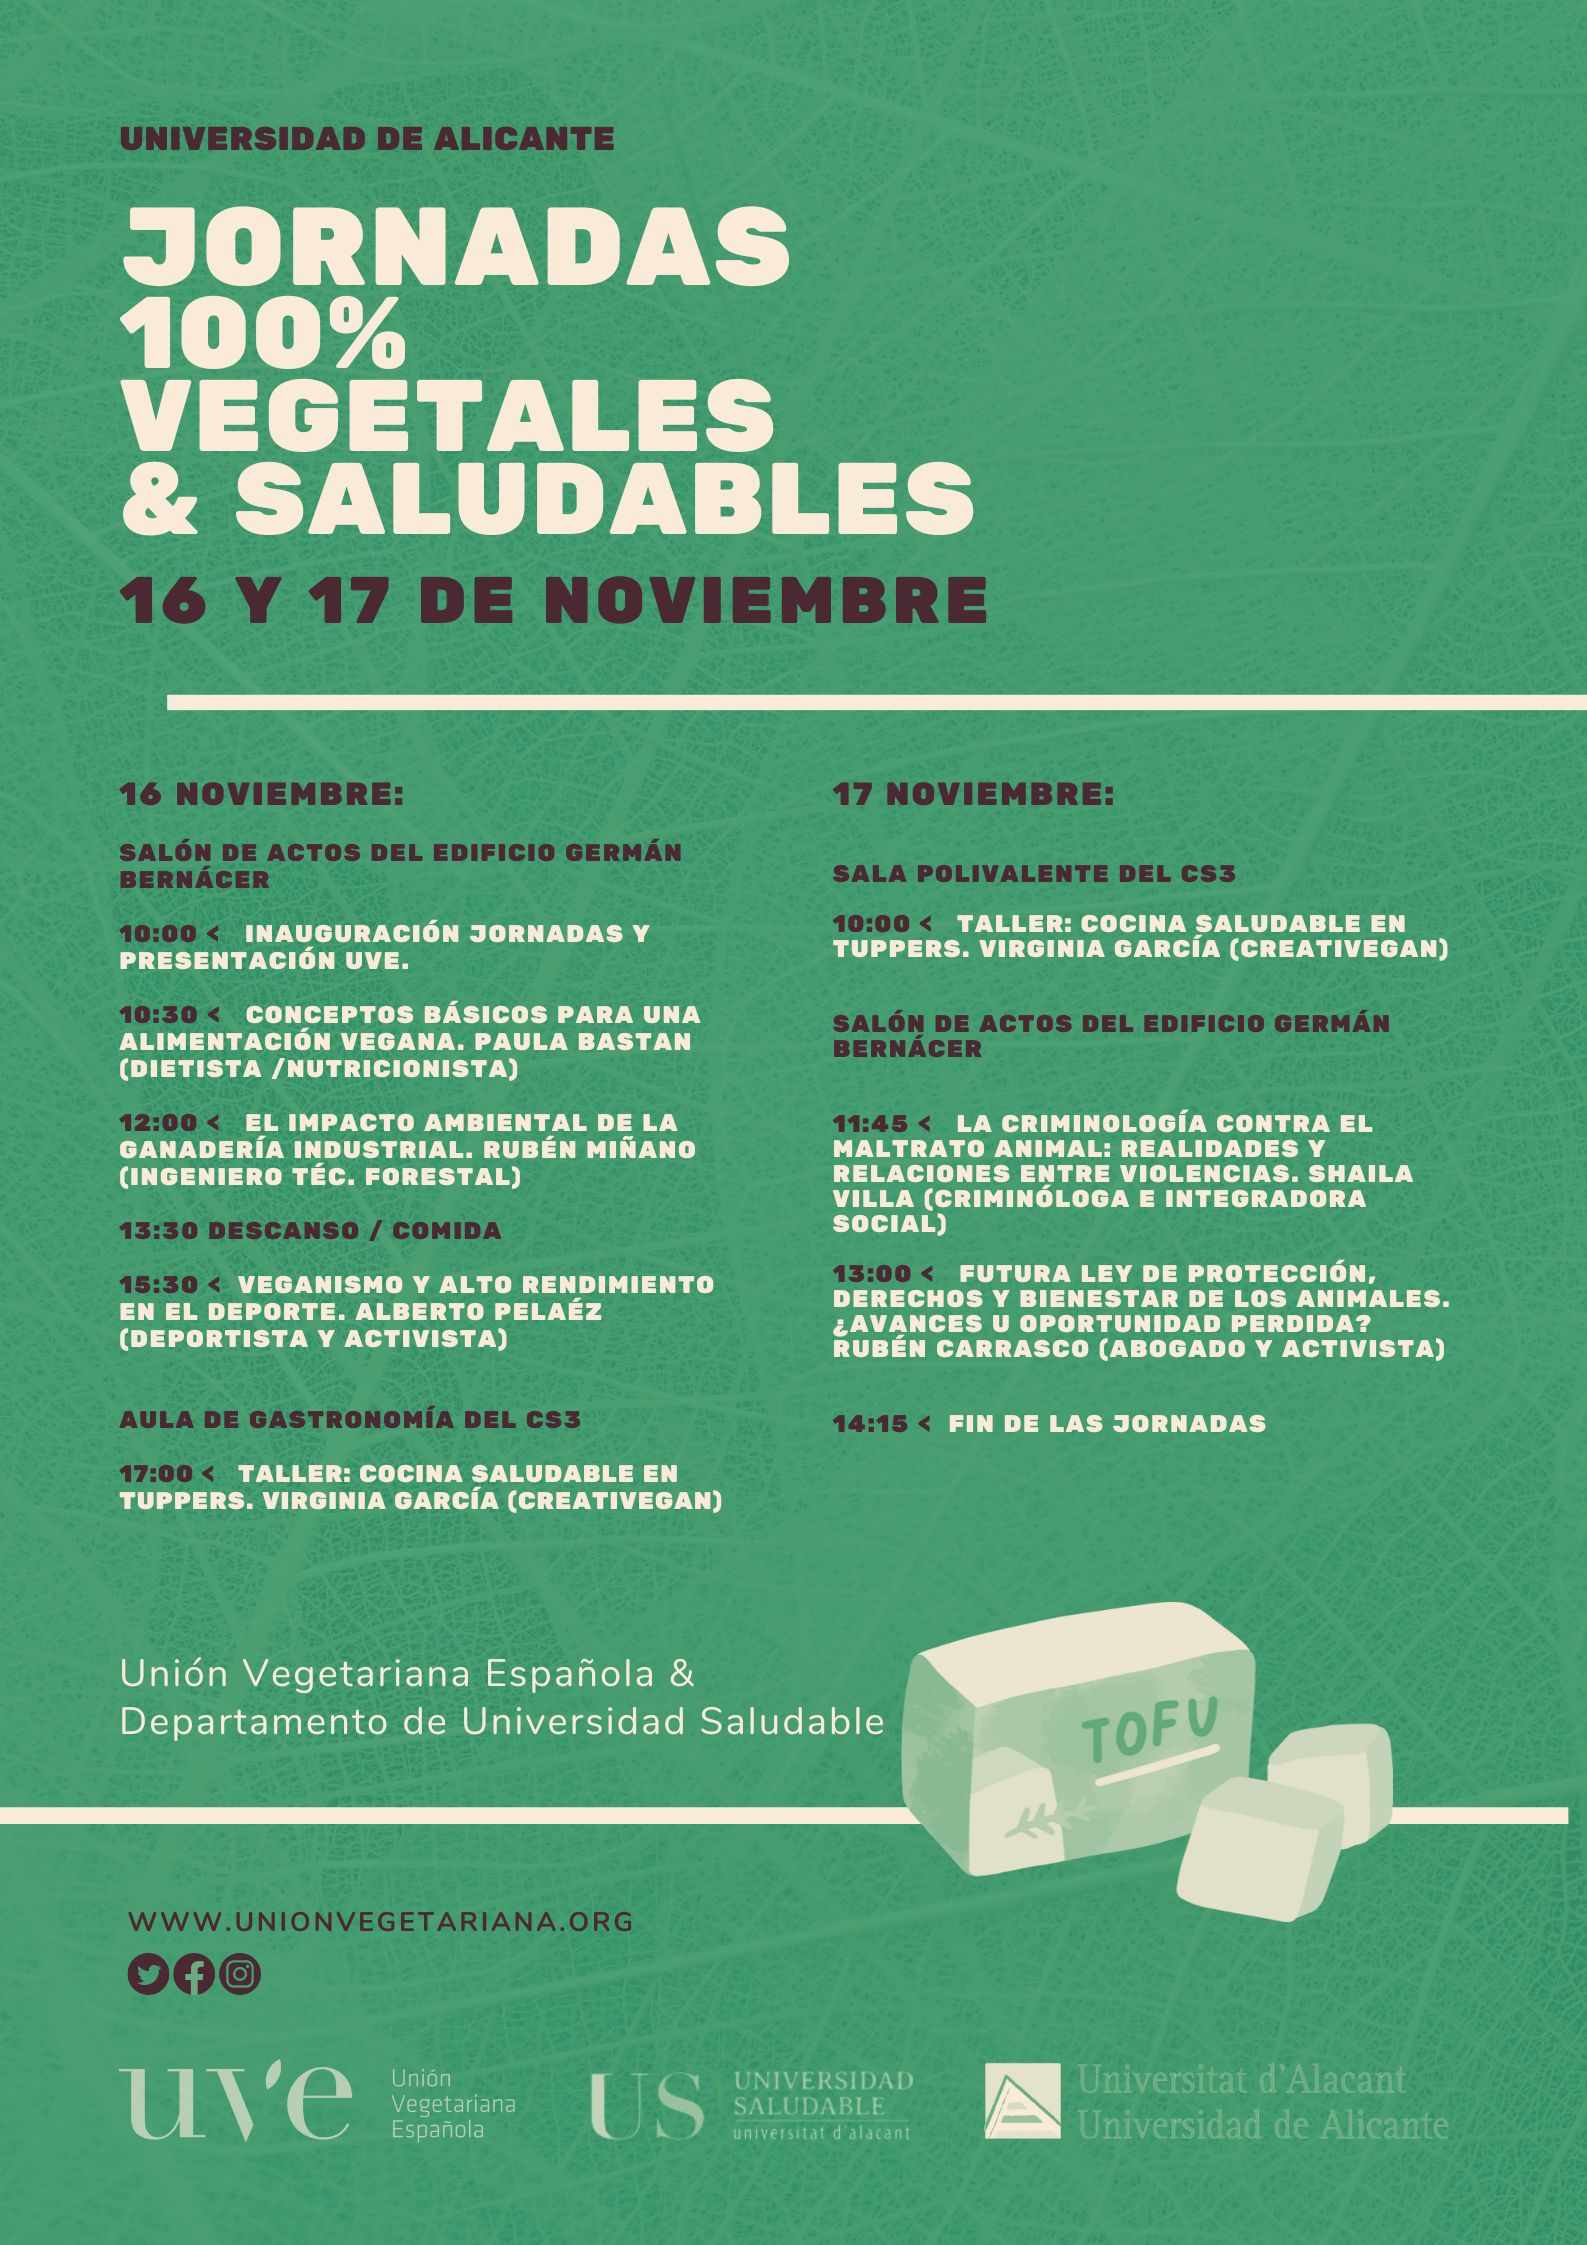 Jornadas 100% vegetales y saludables de la Universidad de Alicante